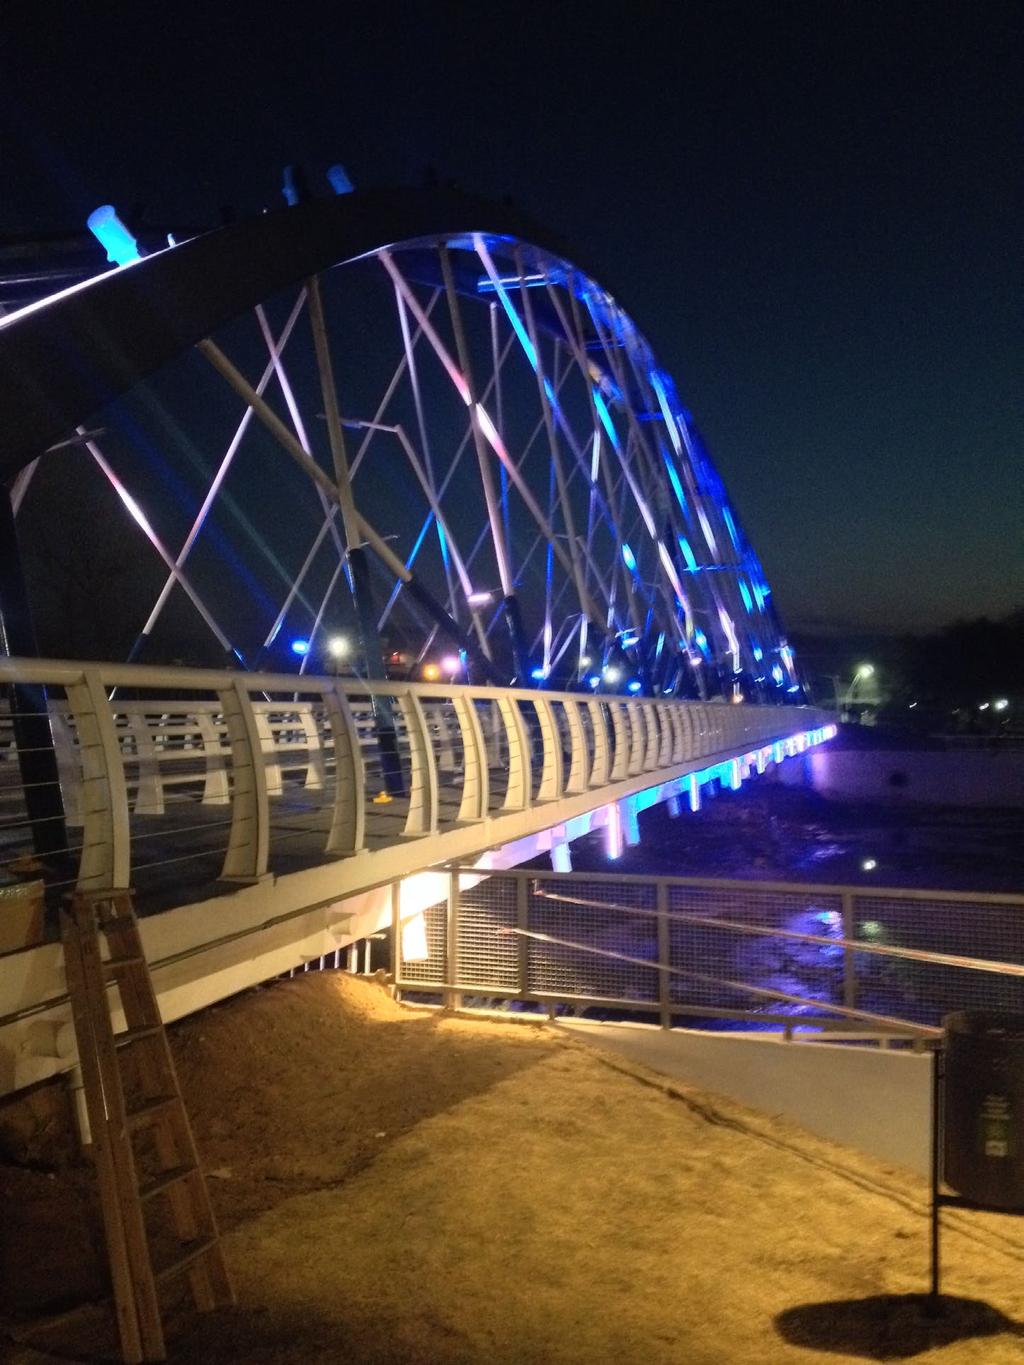 Philips Lighting ofreció una solución completa de iluminación del nuevo puente que incluye el embellecimiento con luz de color y el alumbrado general.